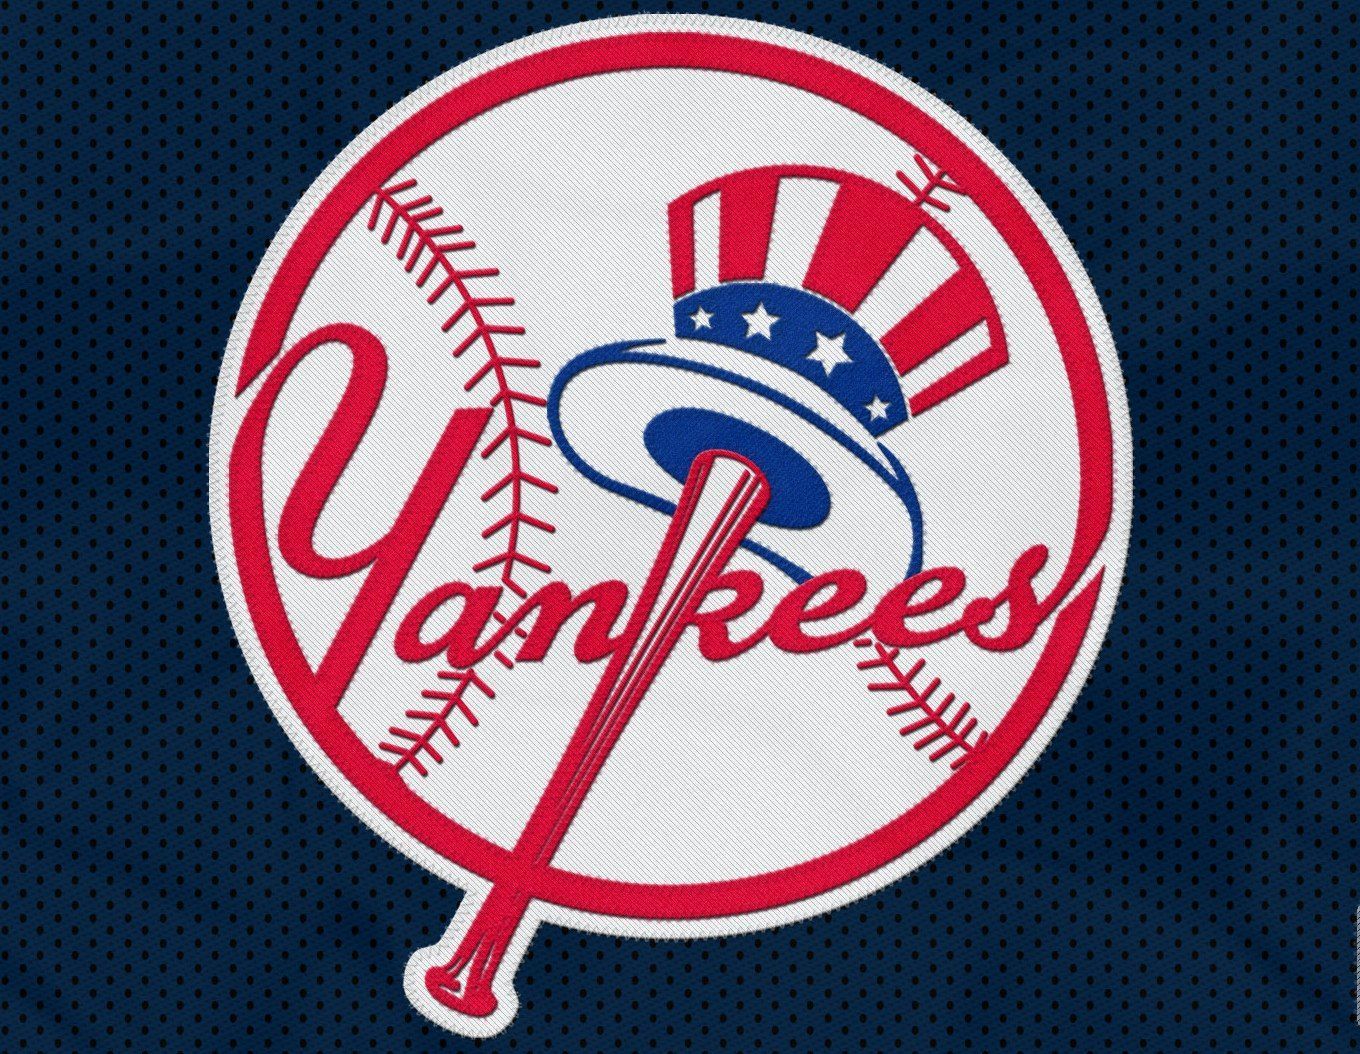 Ny Yankees Logo Wallpapers - Wallpaper Cave